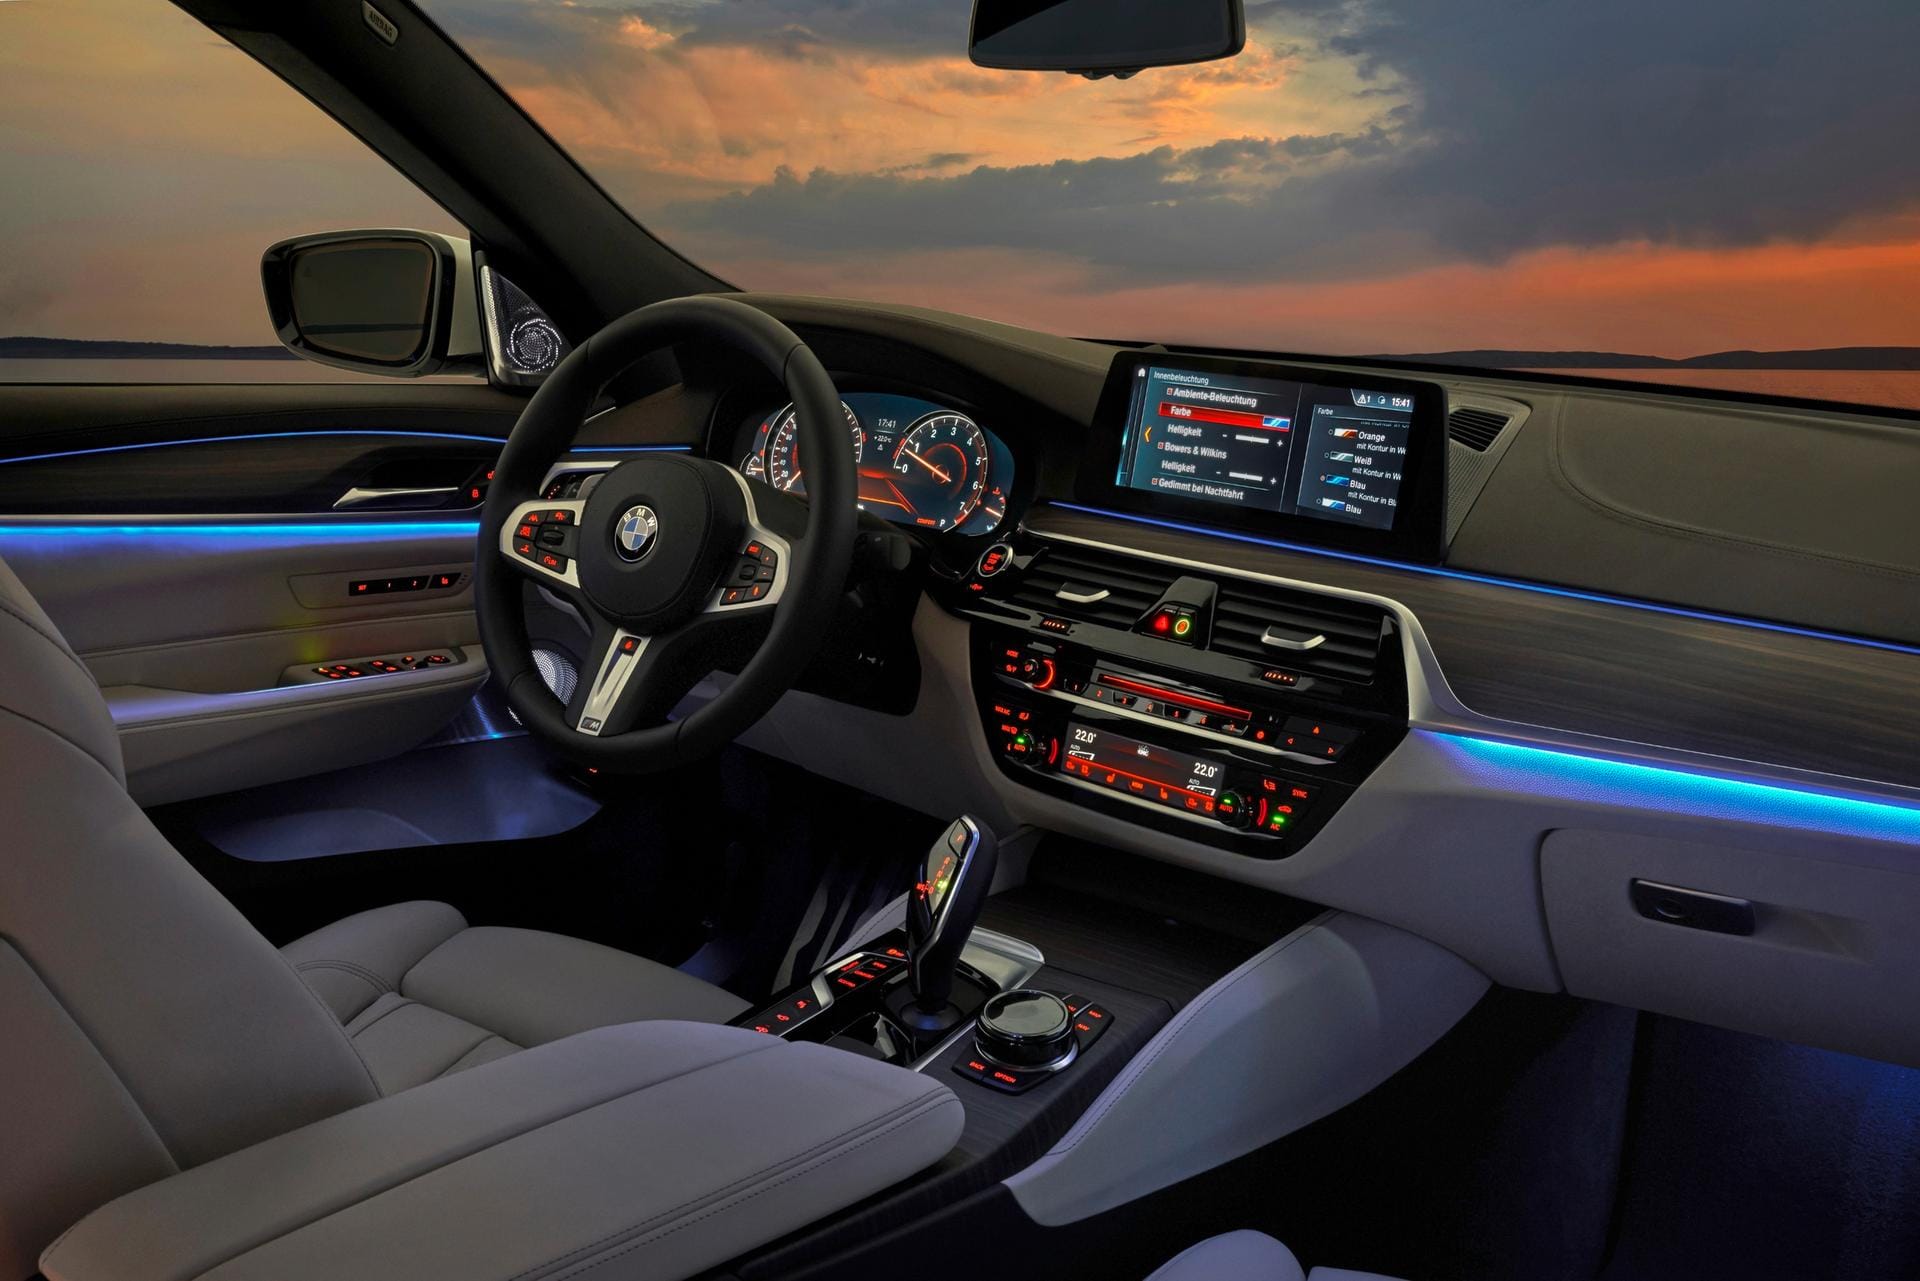 Das bekannte BMW-Cockpit glänzt durch gute Übersicht, leichte Bedienung und exzellente Verarbeitung.